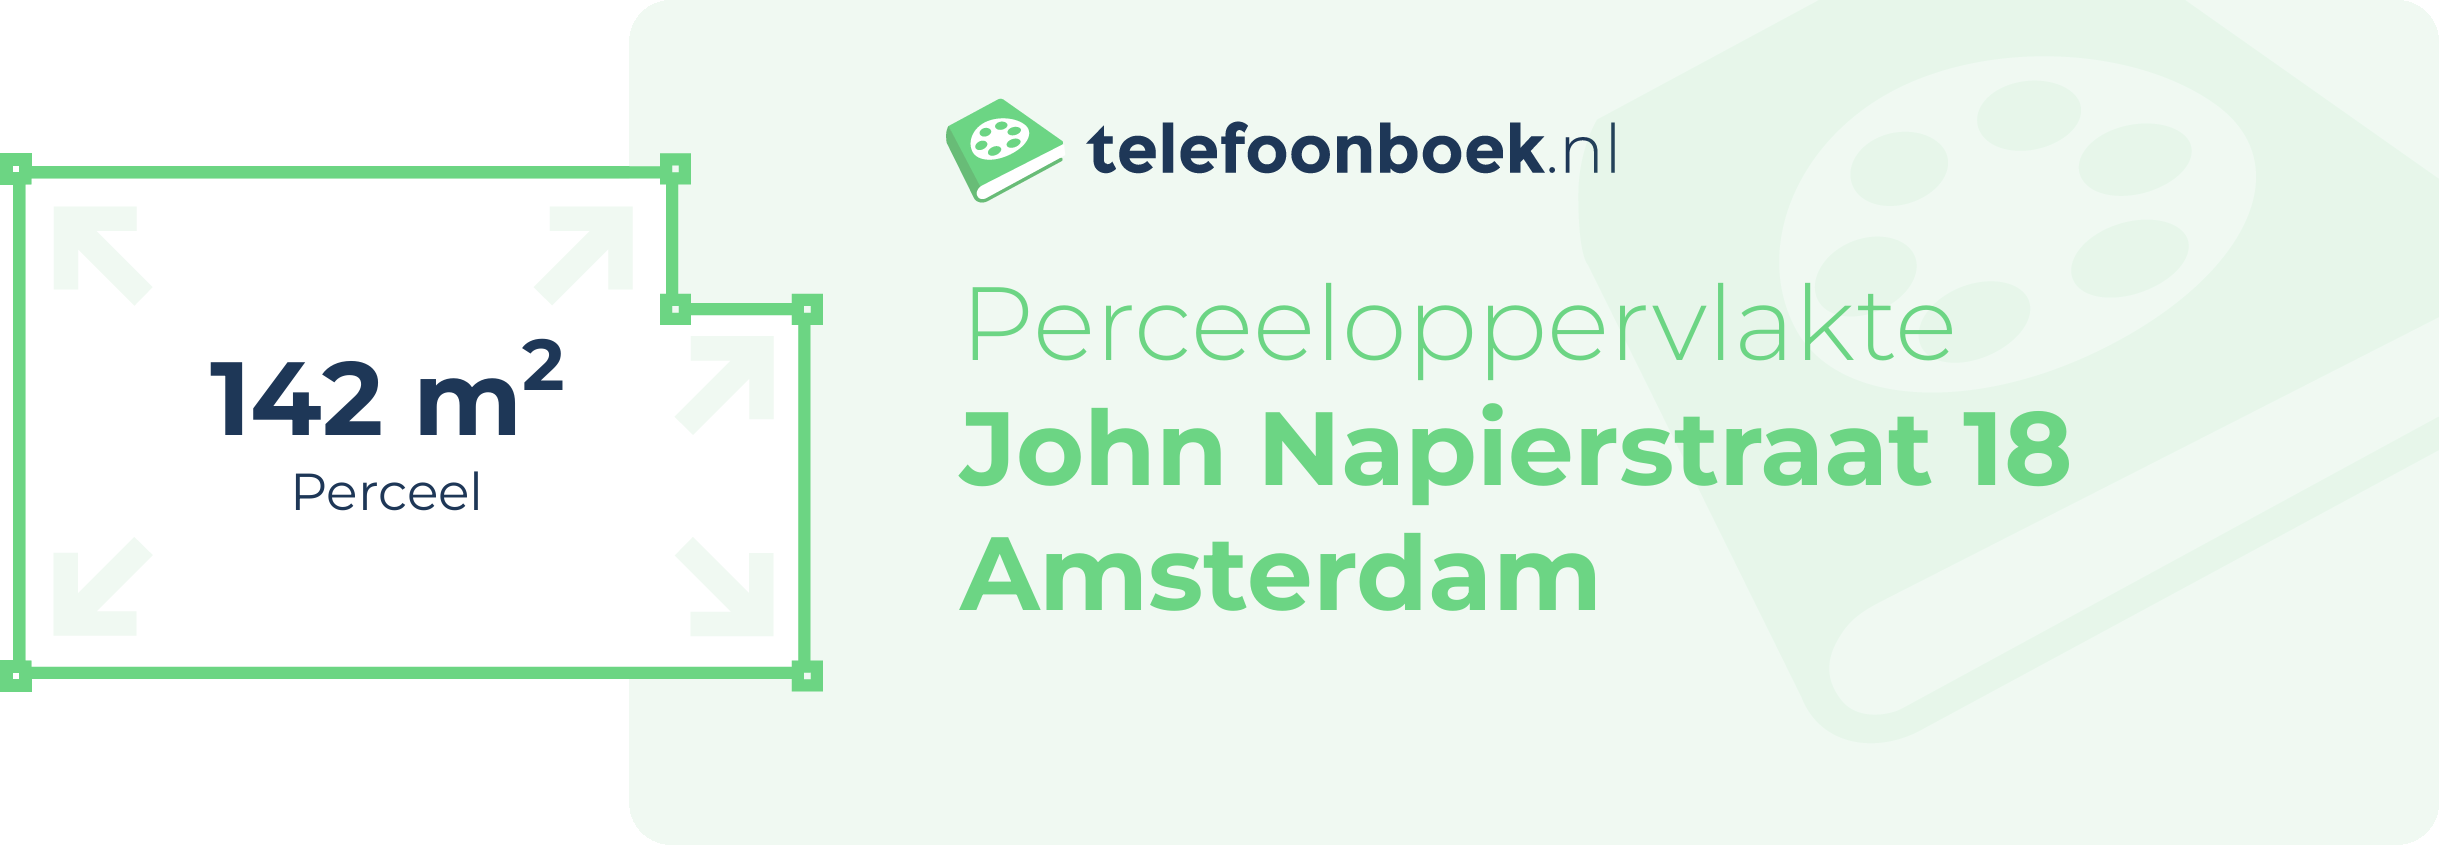 Perceeloppervlakte John Napierstraat 18 Amsterdam